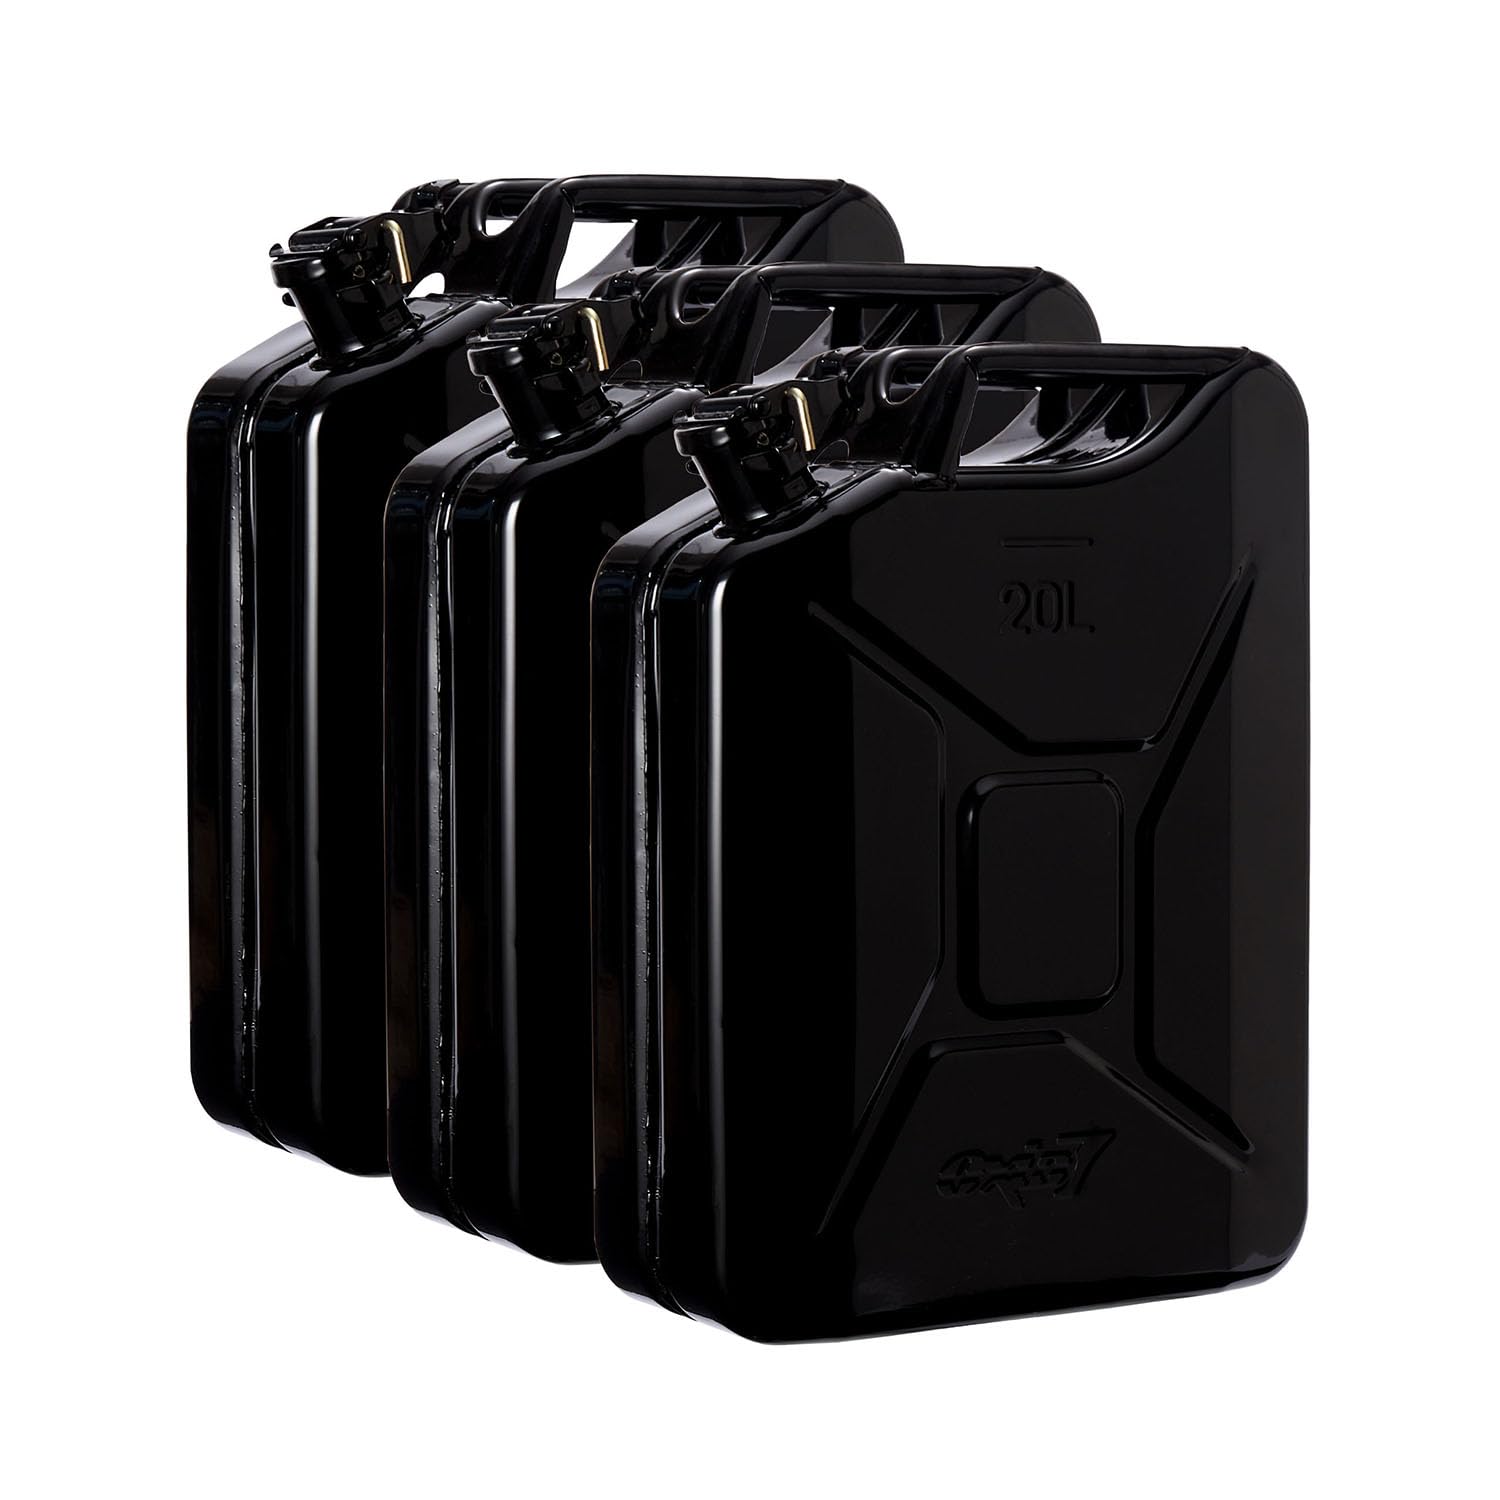 Oxid7 3x Kraftstoffkanister 20 Liter aus Metall schwarz | Benzin, Diesel & Bio-Ethanol geeignet | 20L Benzin-Kanister mit UN-Zulassung & Bauart geprüft von Oxid7